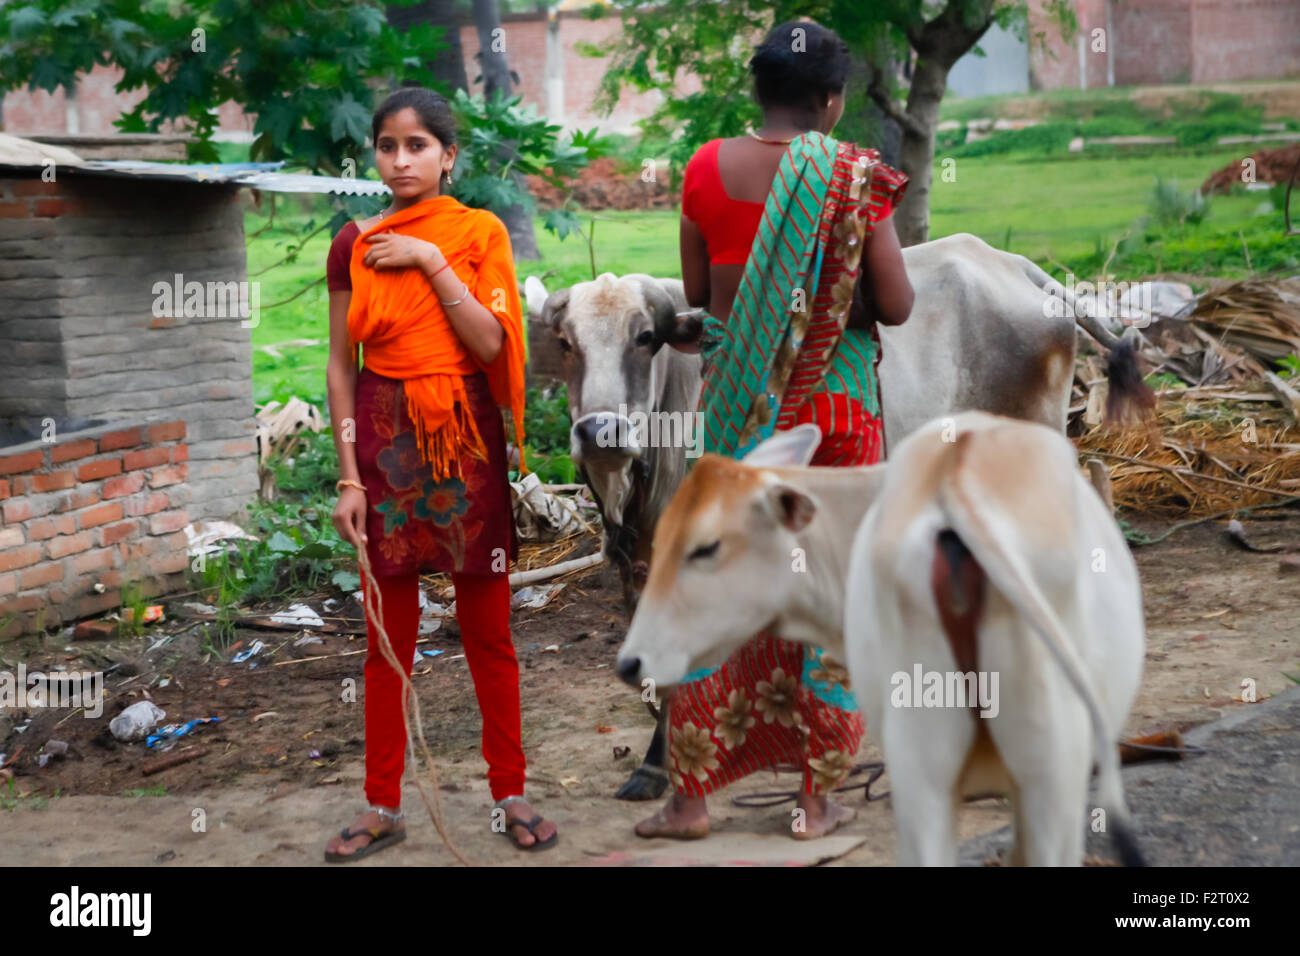 Ein Kind und eine Frau werden fotografiert, während sie zwischen Kühen auf einer Landstraße in Dungeshwari, Gaya, Bihar, Indien stehen. Stockfoto